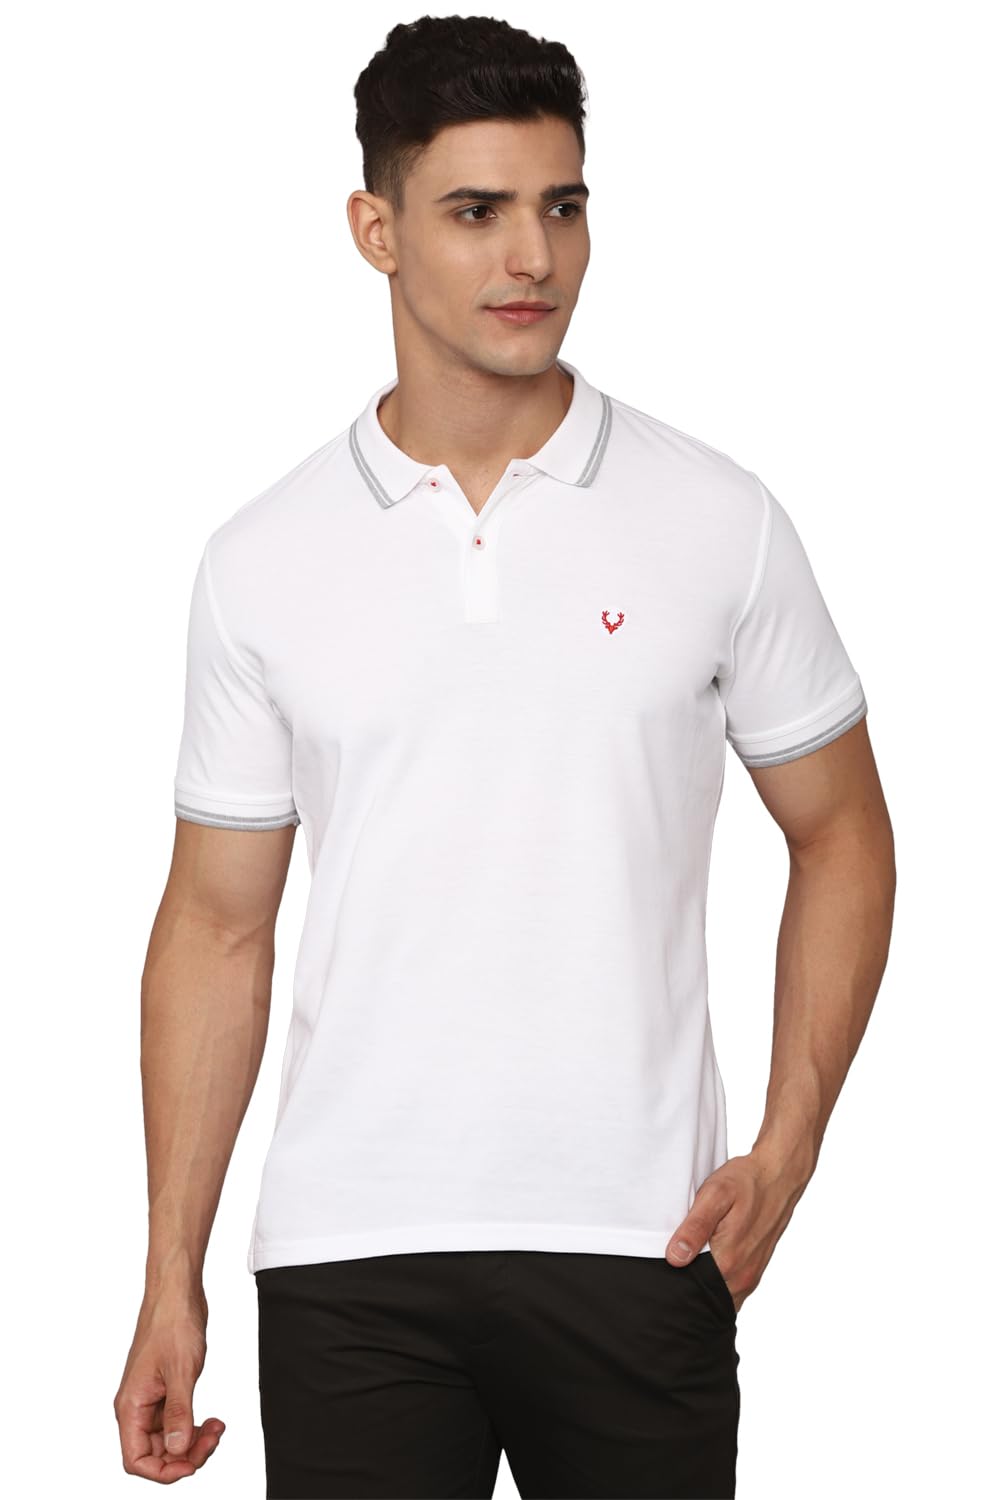 Allen Solly Men's Solid Regular Fit T-Shirt (ASKPNRGFS50508_White